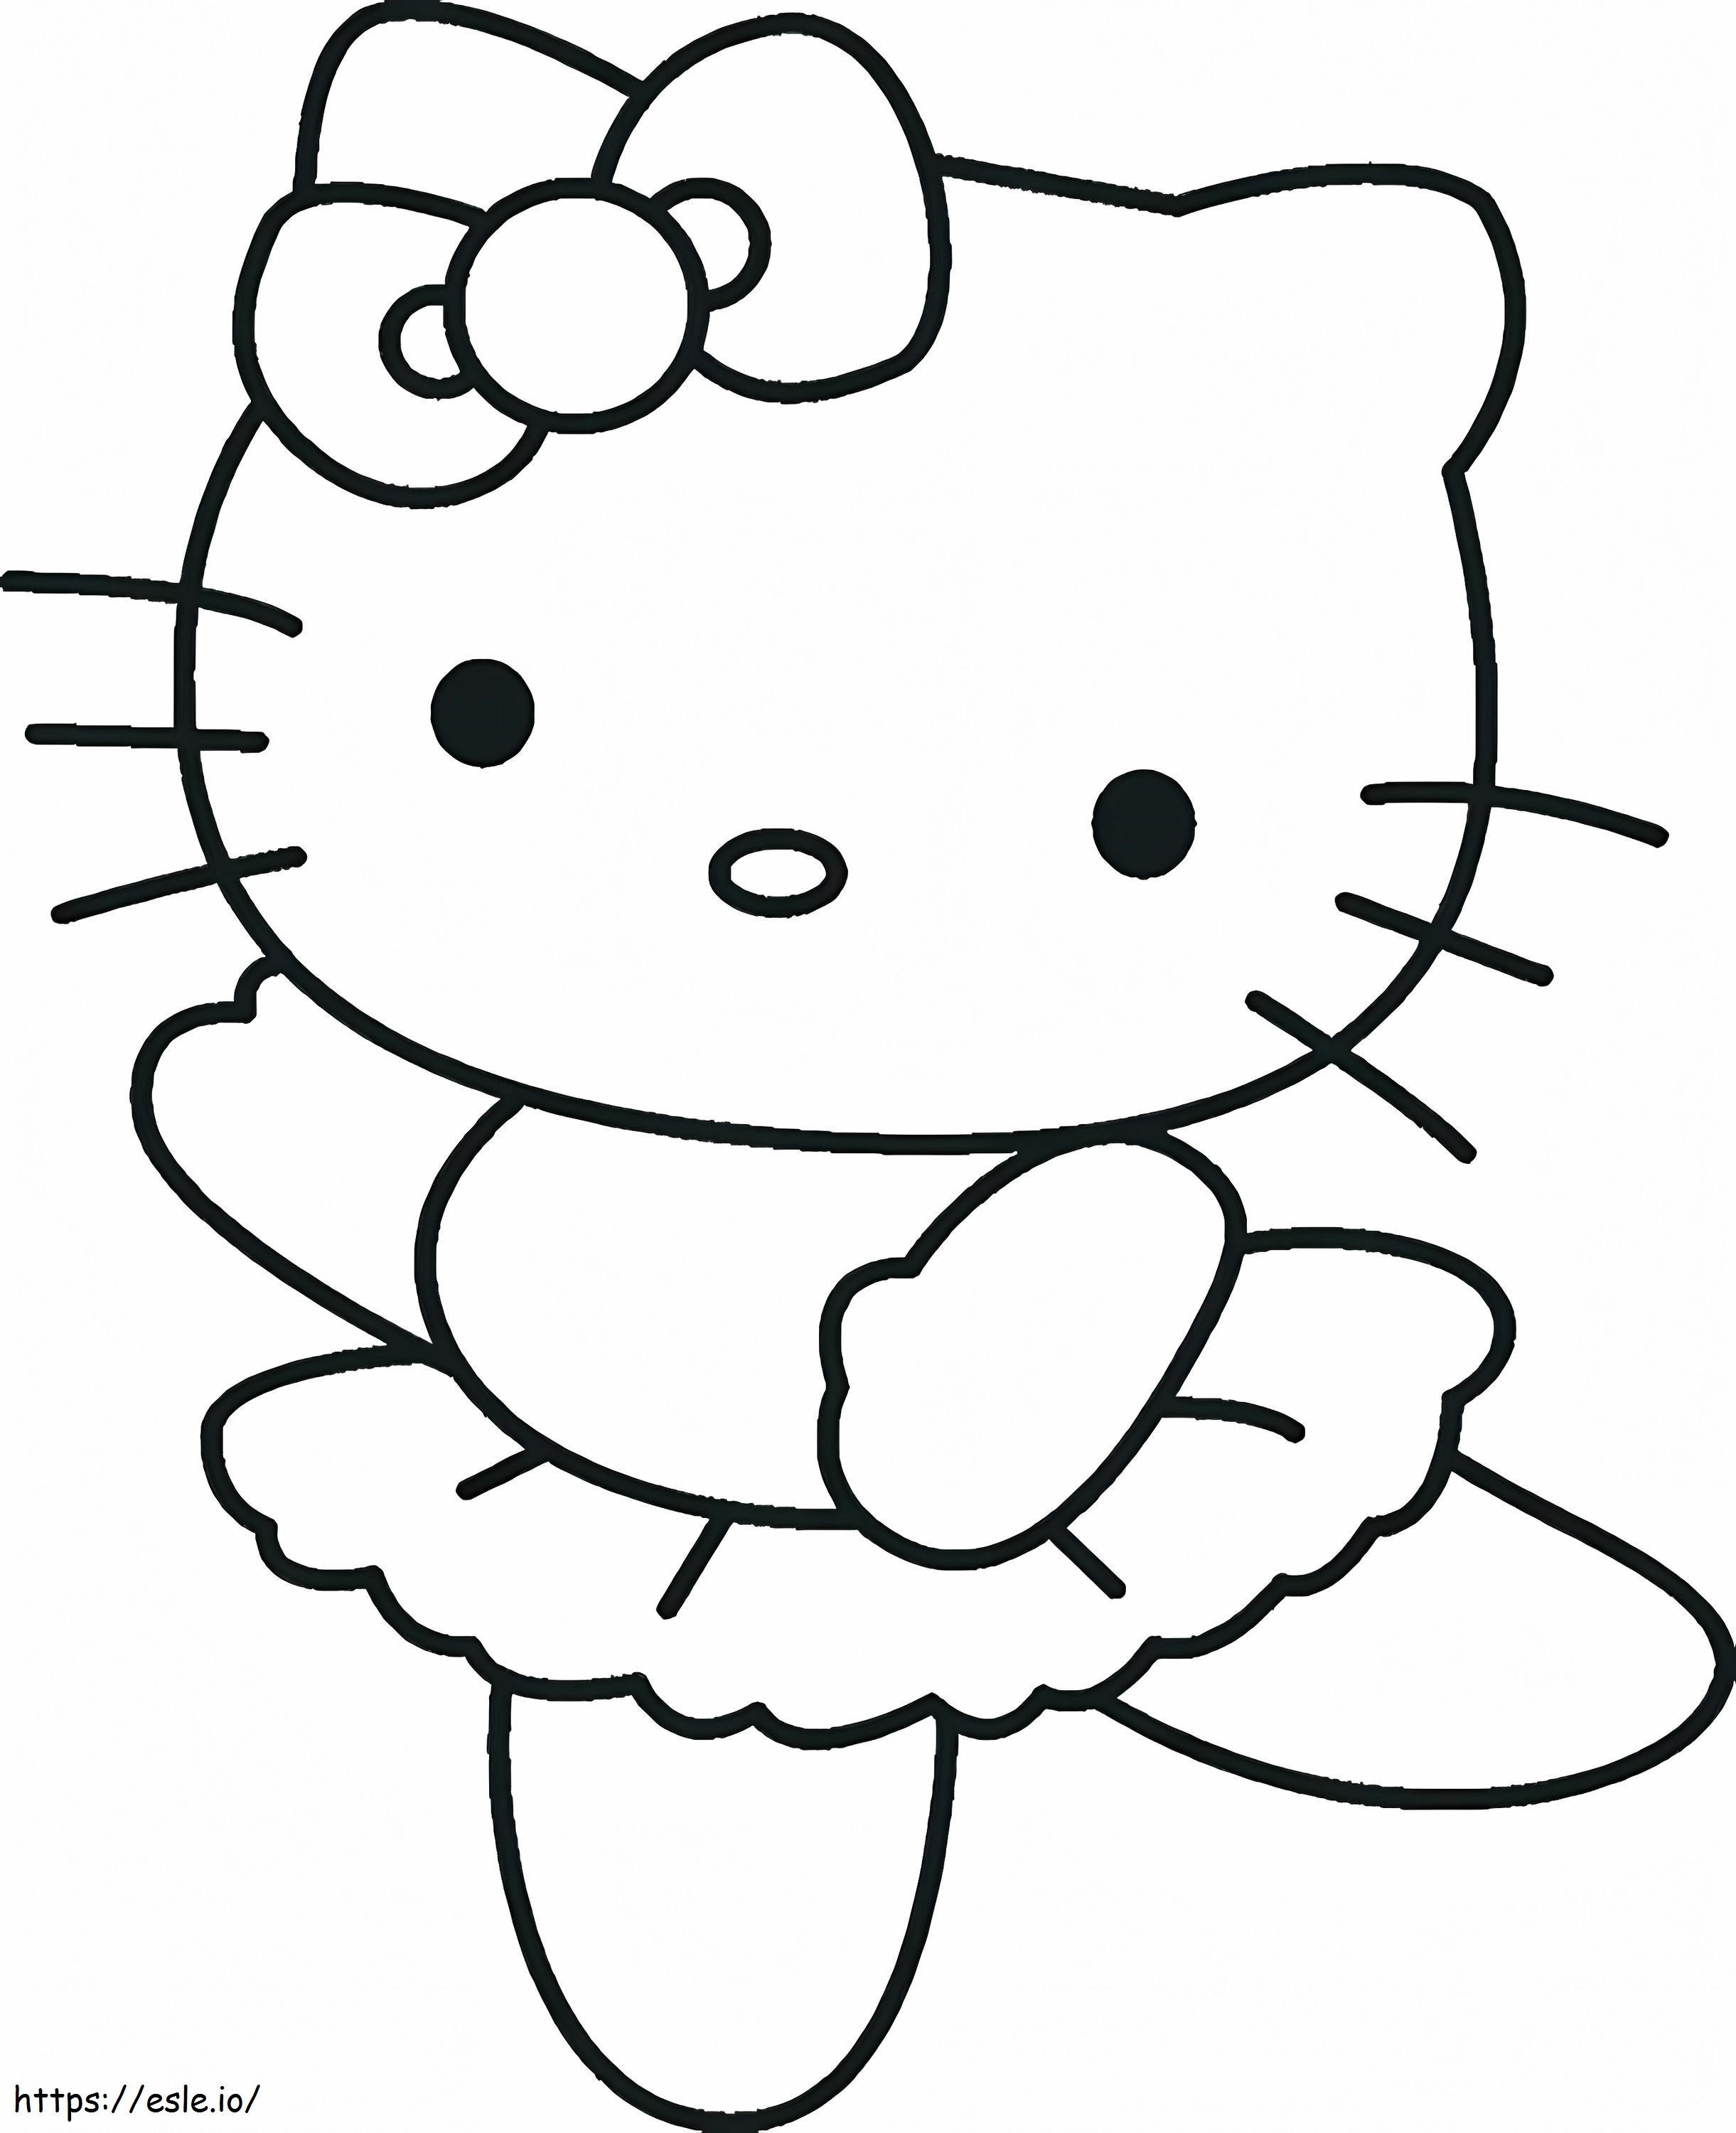  Imprimível Hello Kitty Folha de bailarina para crianças grátis para colorir